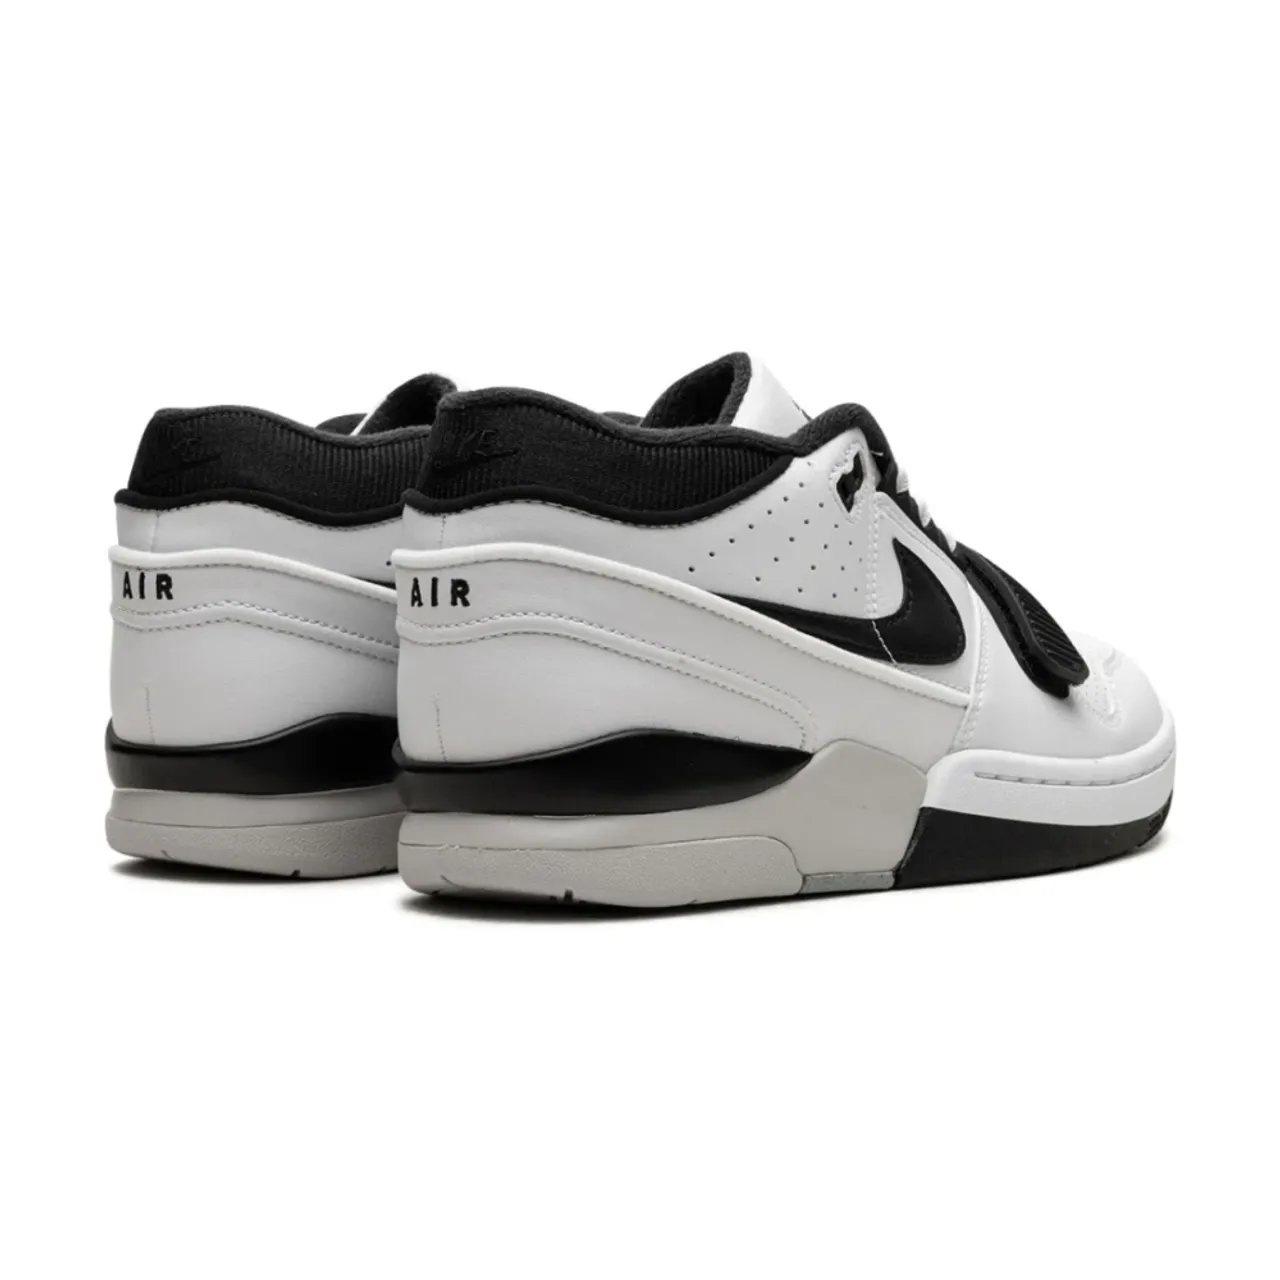 Nike , Billie Eilish Sneakers White/Black-Neutral Grey ,White male, Sizes: